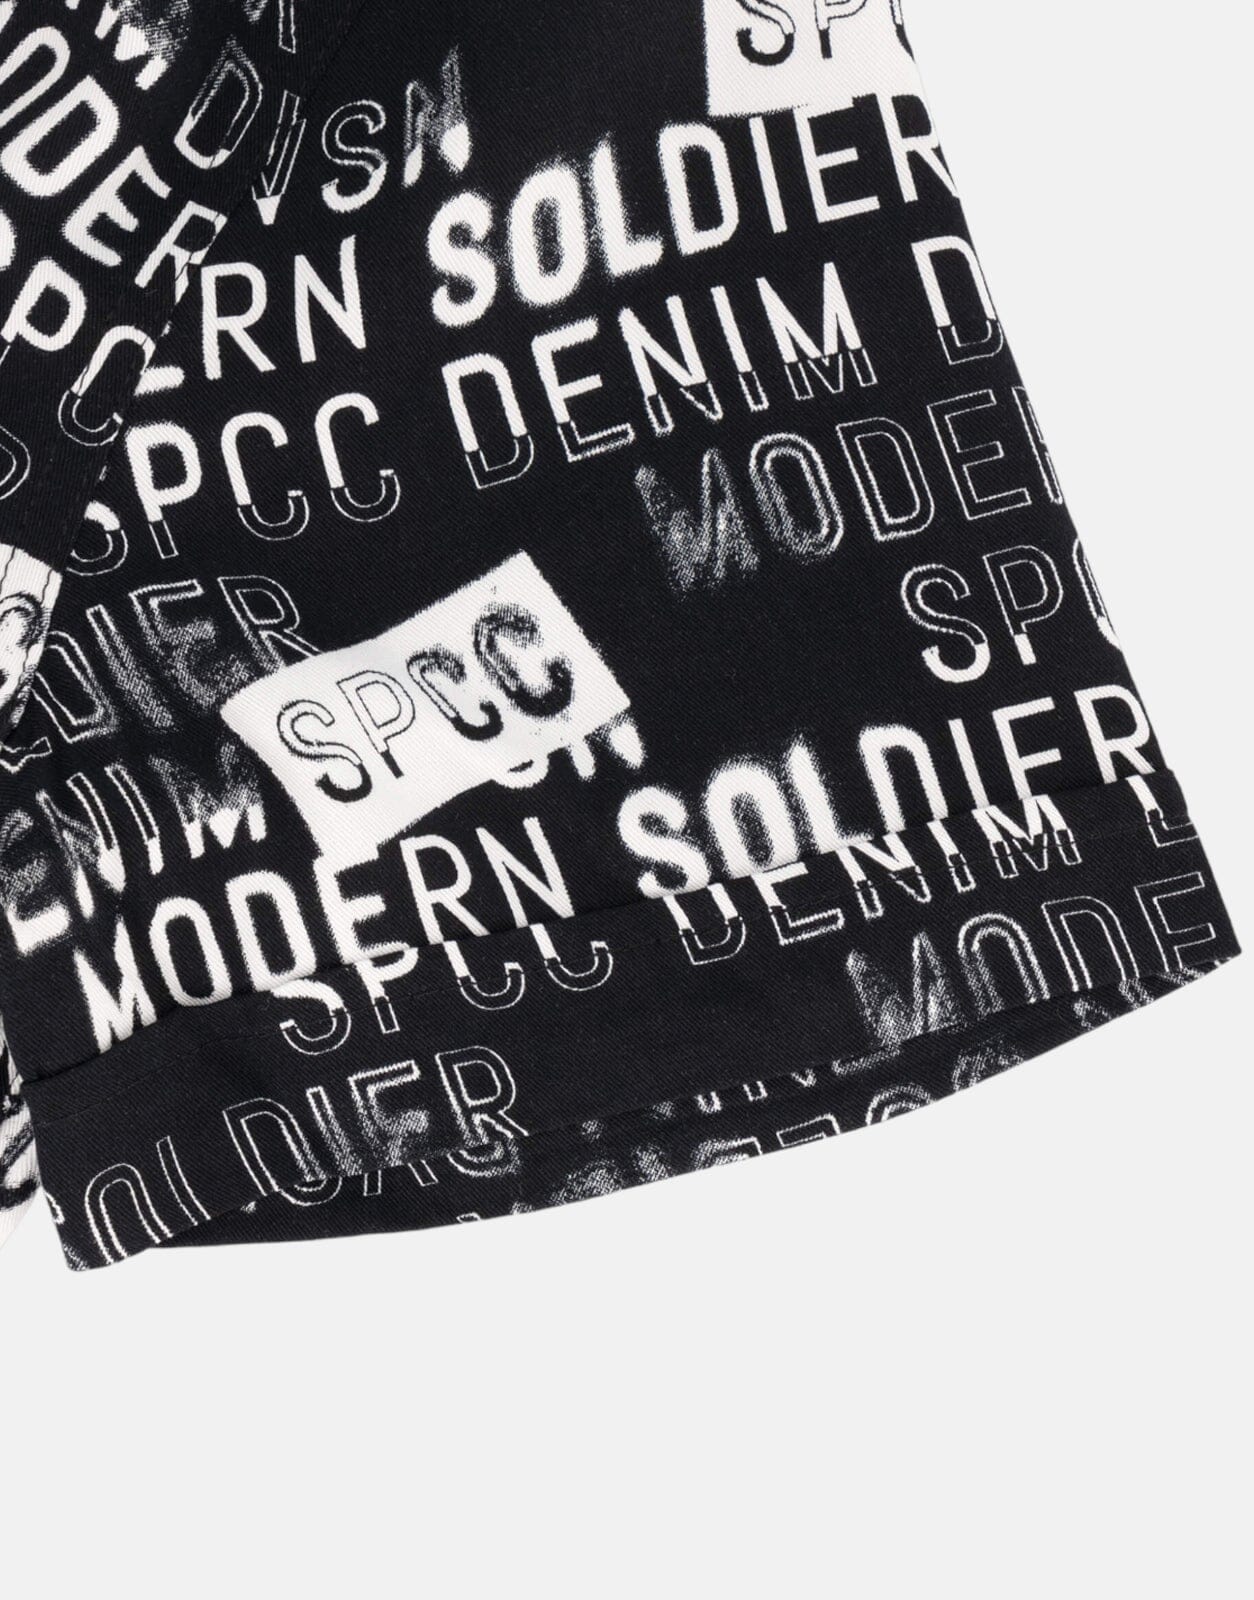 SPCC Bates Black Shirt - Subwear